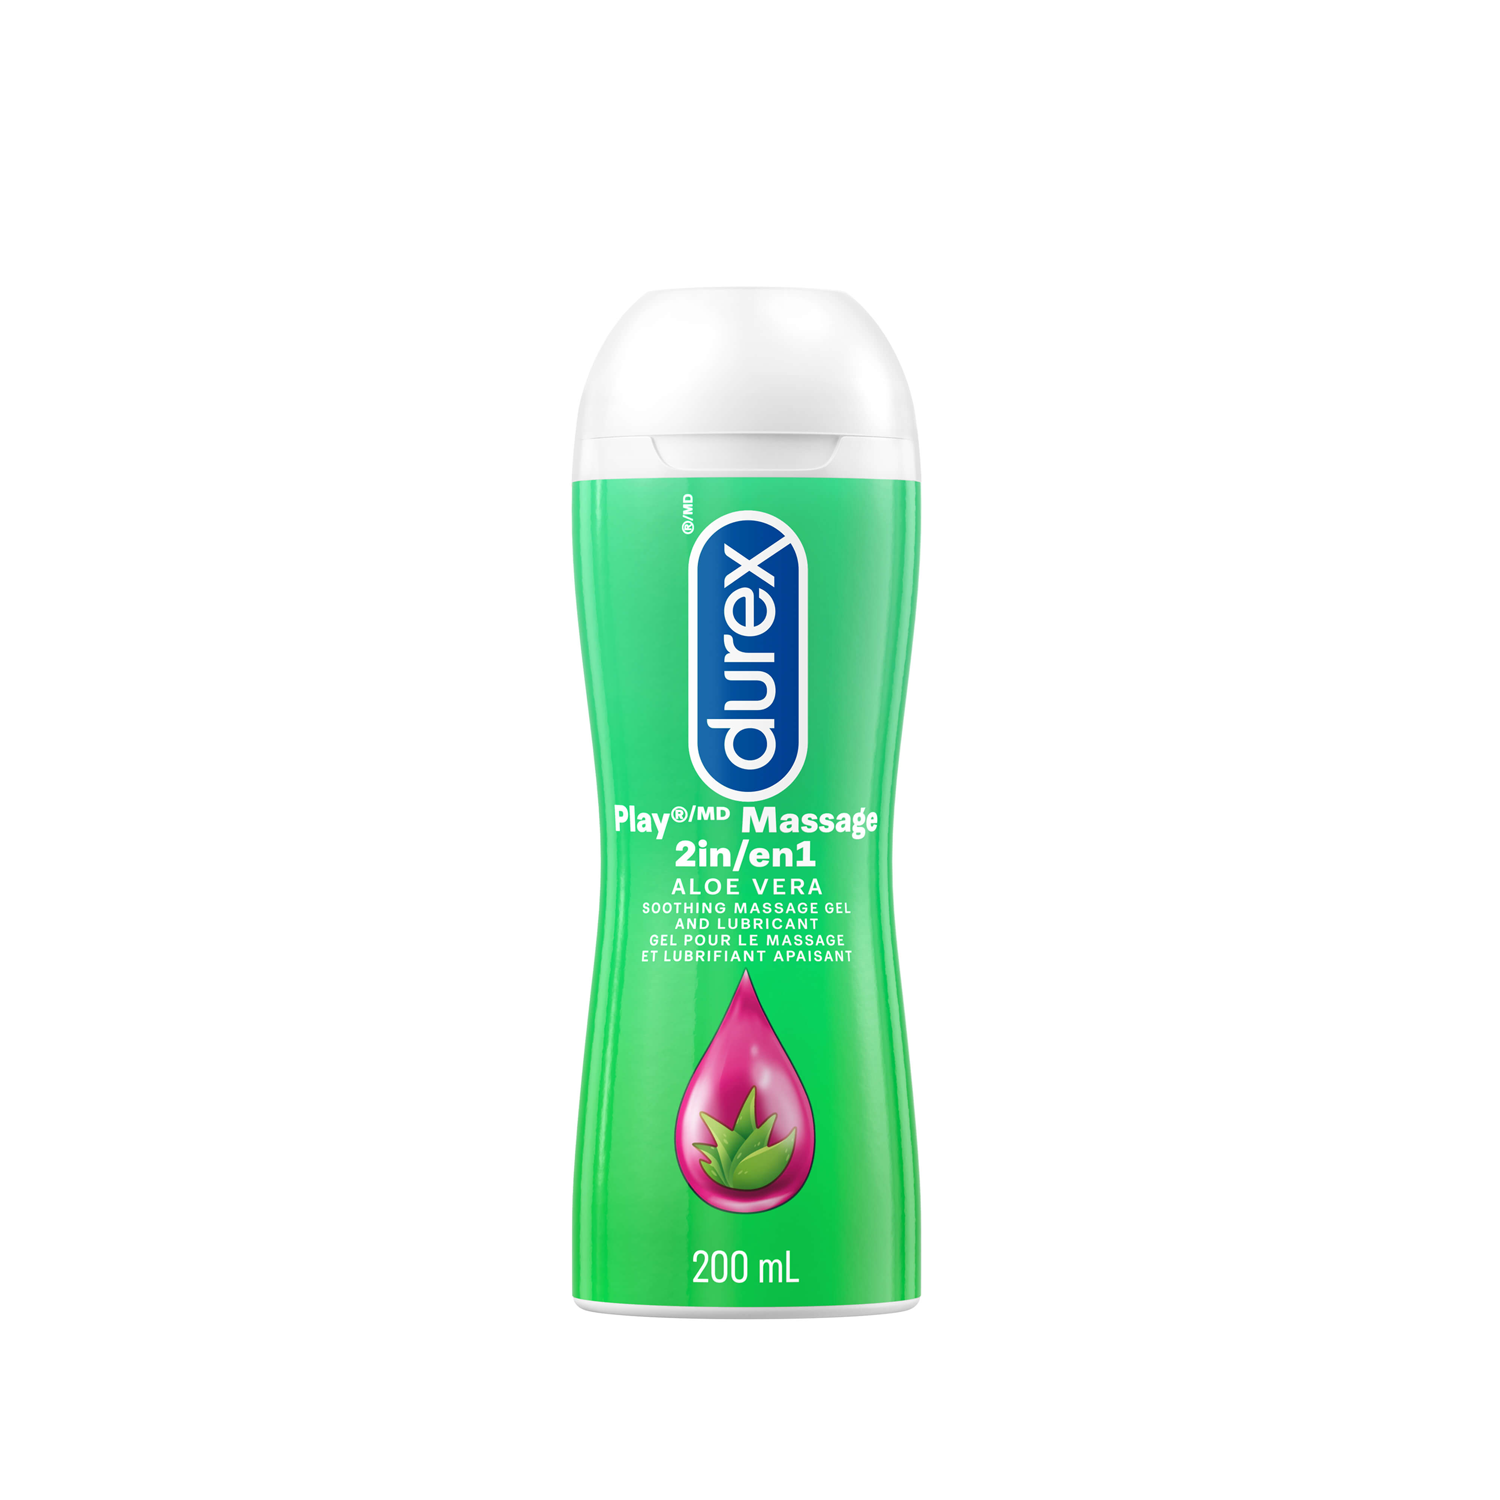 packshot of Durex Play Massage 2 in 1 Aloe Vera lube bottle